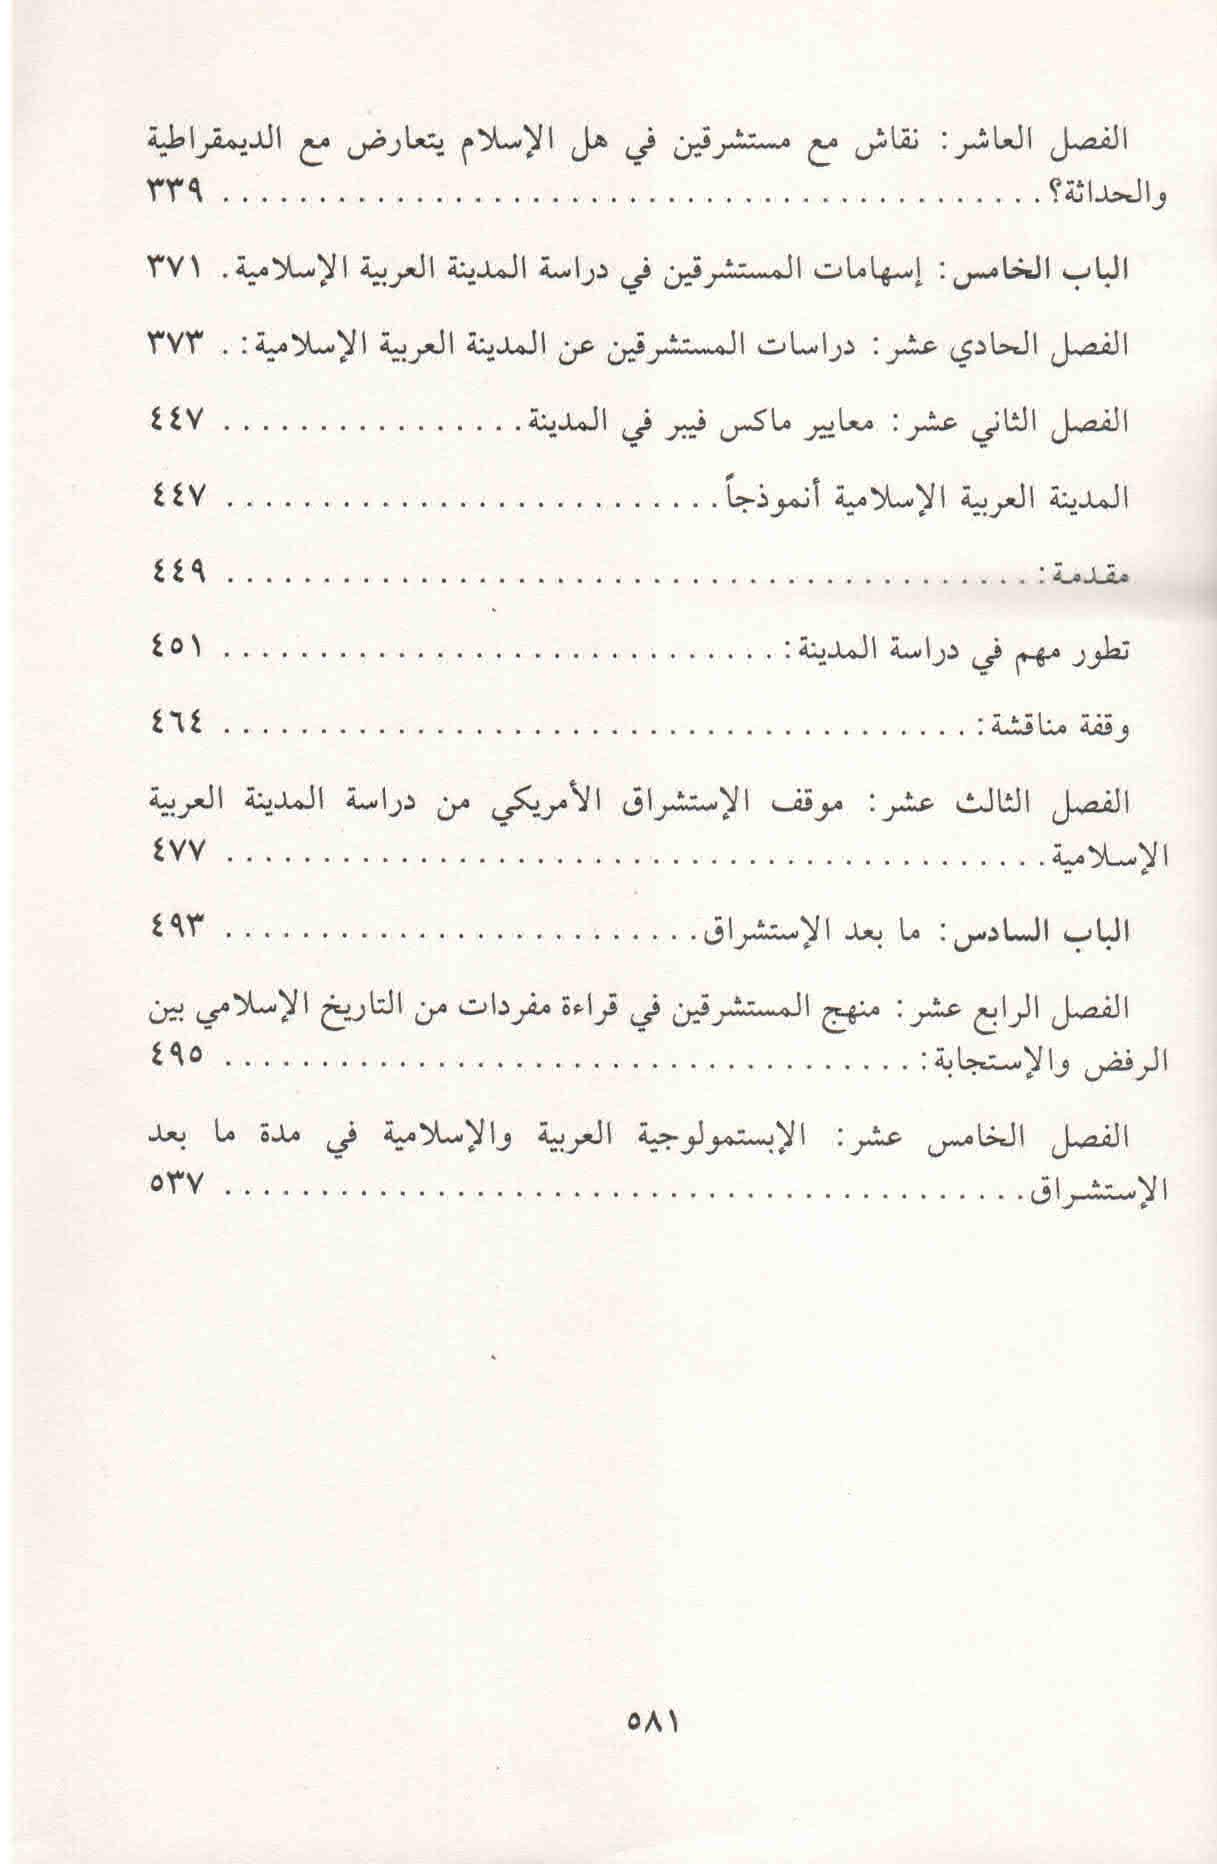 ص. 581 قائمة محتويات كتاب الإستشراق في التاريخ